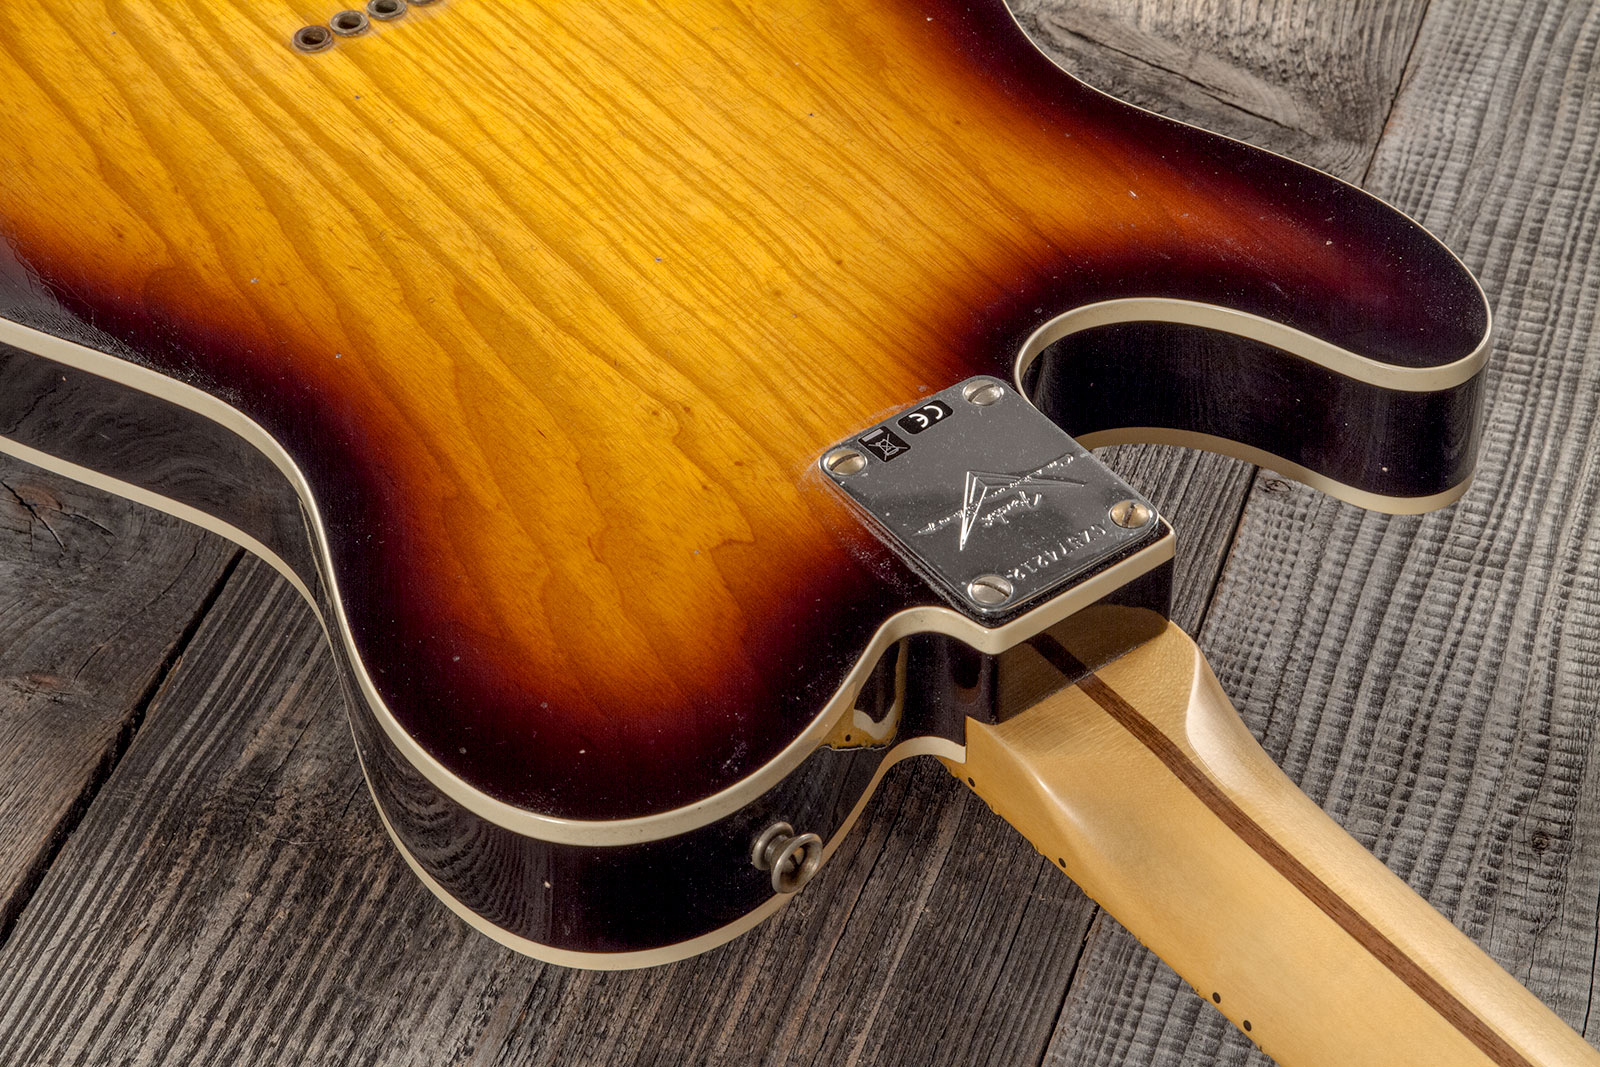 Fender Custom Shop Tele Thinline 50s Mn #cz574212 - Journeyman Relic Aged 2-color Sunburst - Guitarra eléctrica con forma de tel - Variation 7